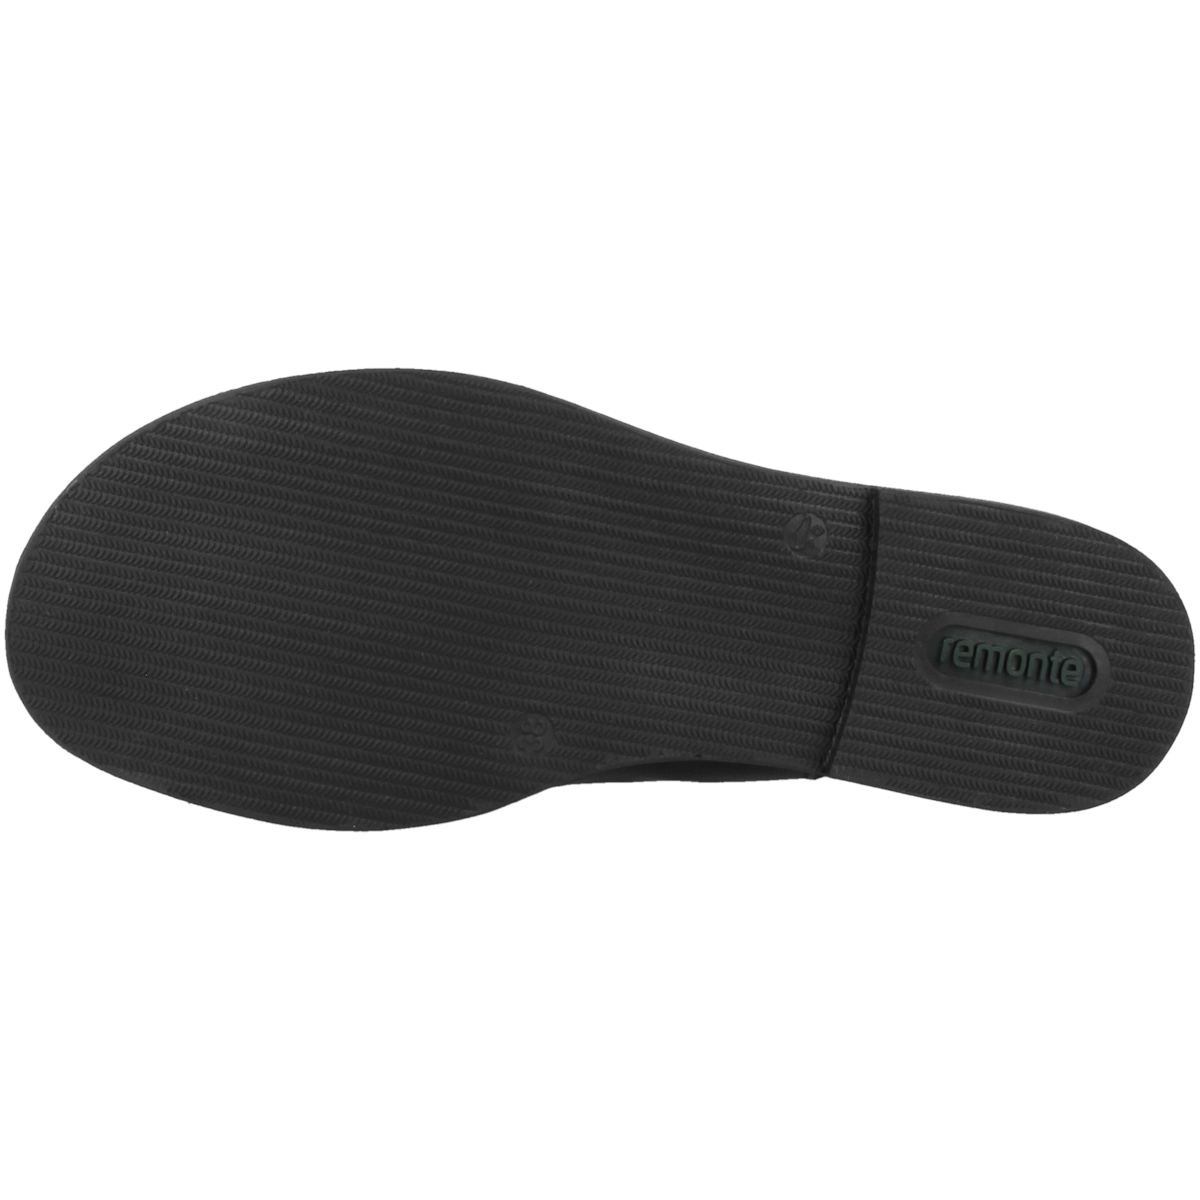 Remonte D3650 Sandale schwarz